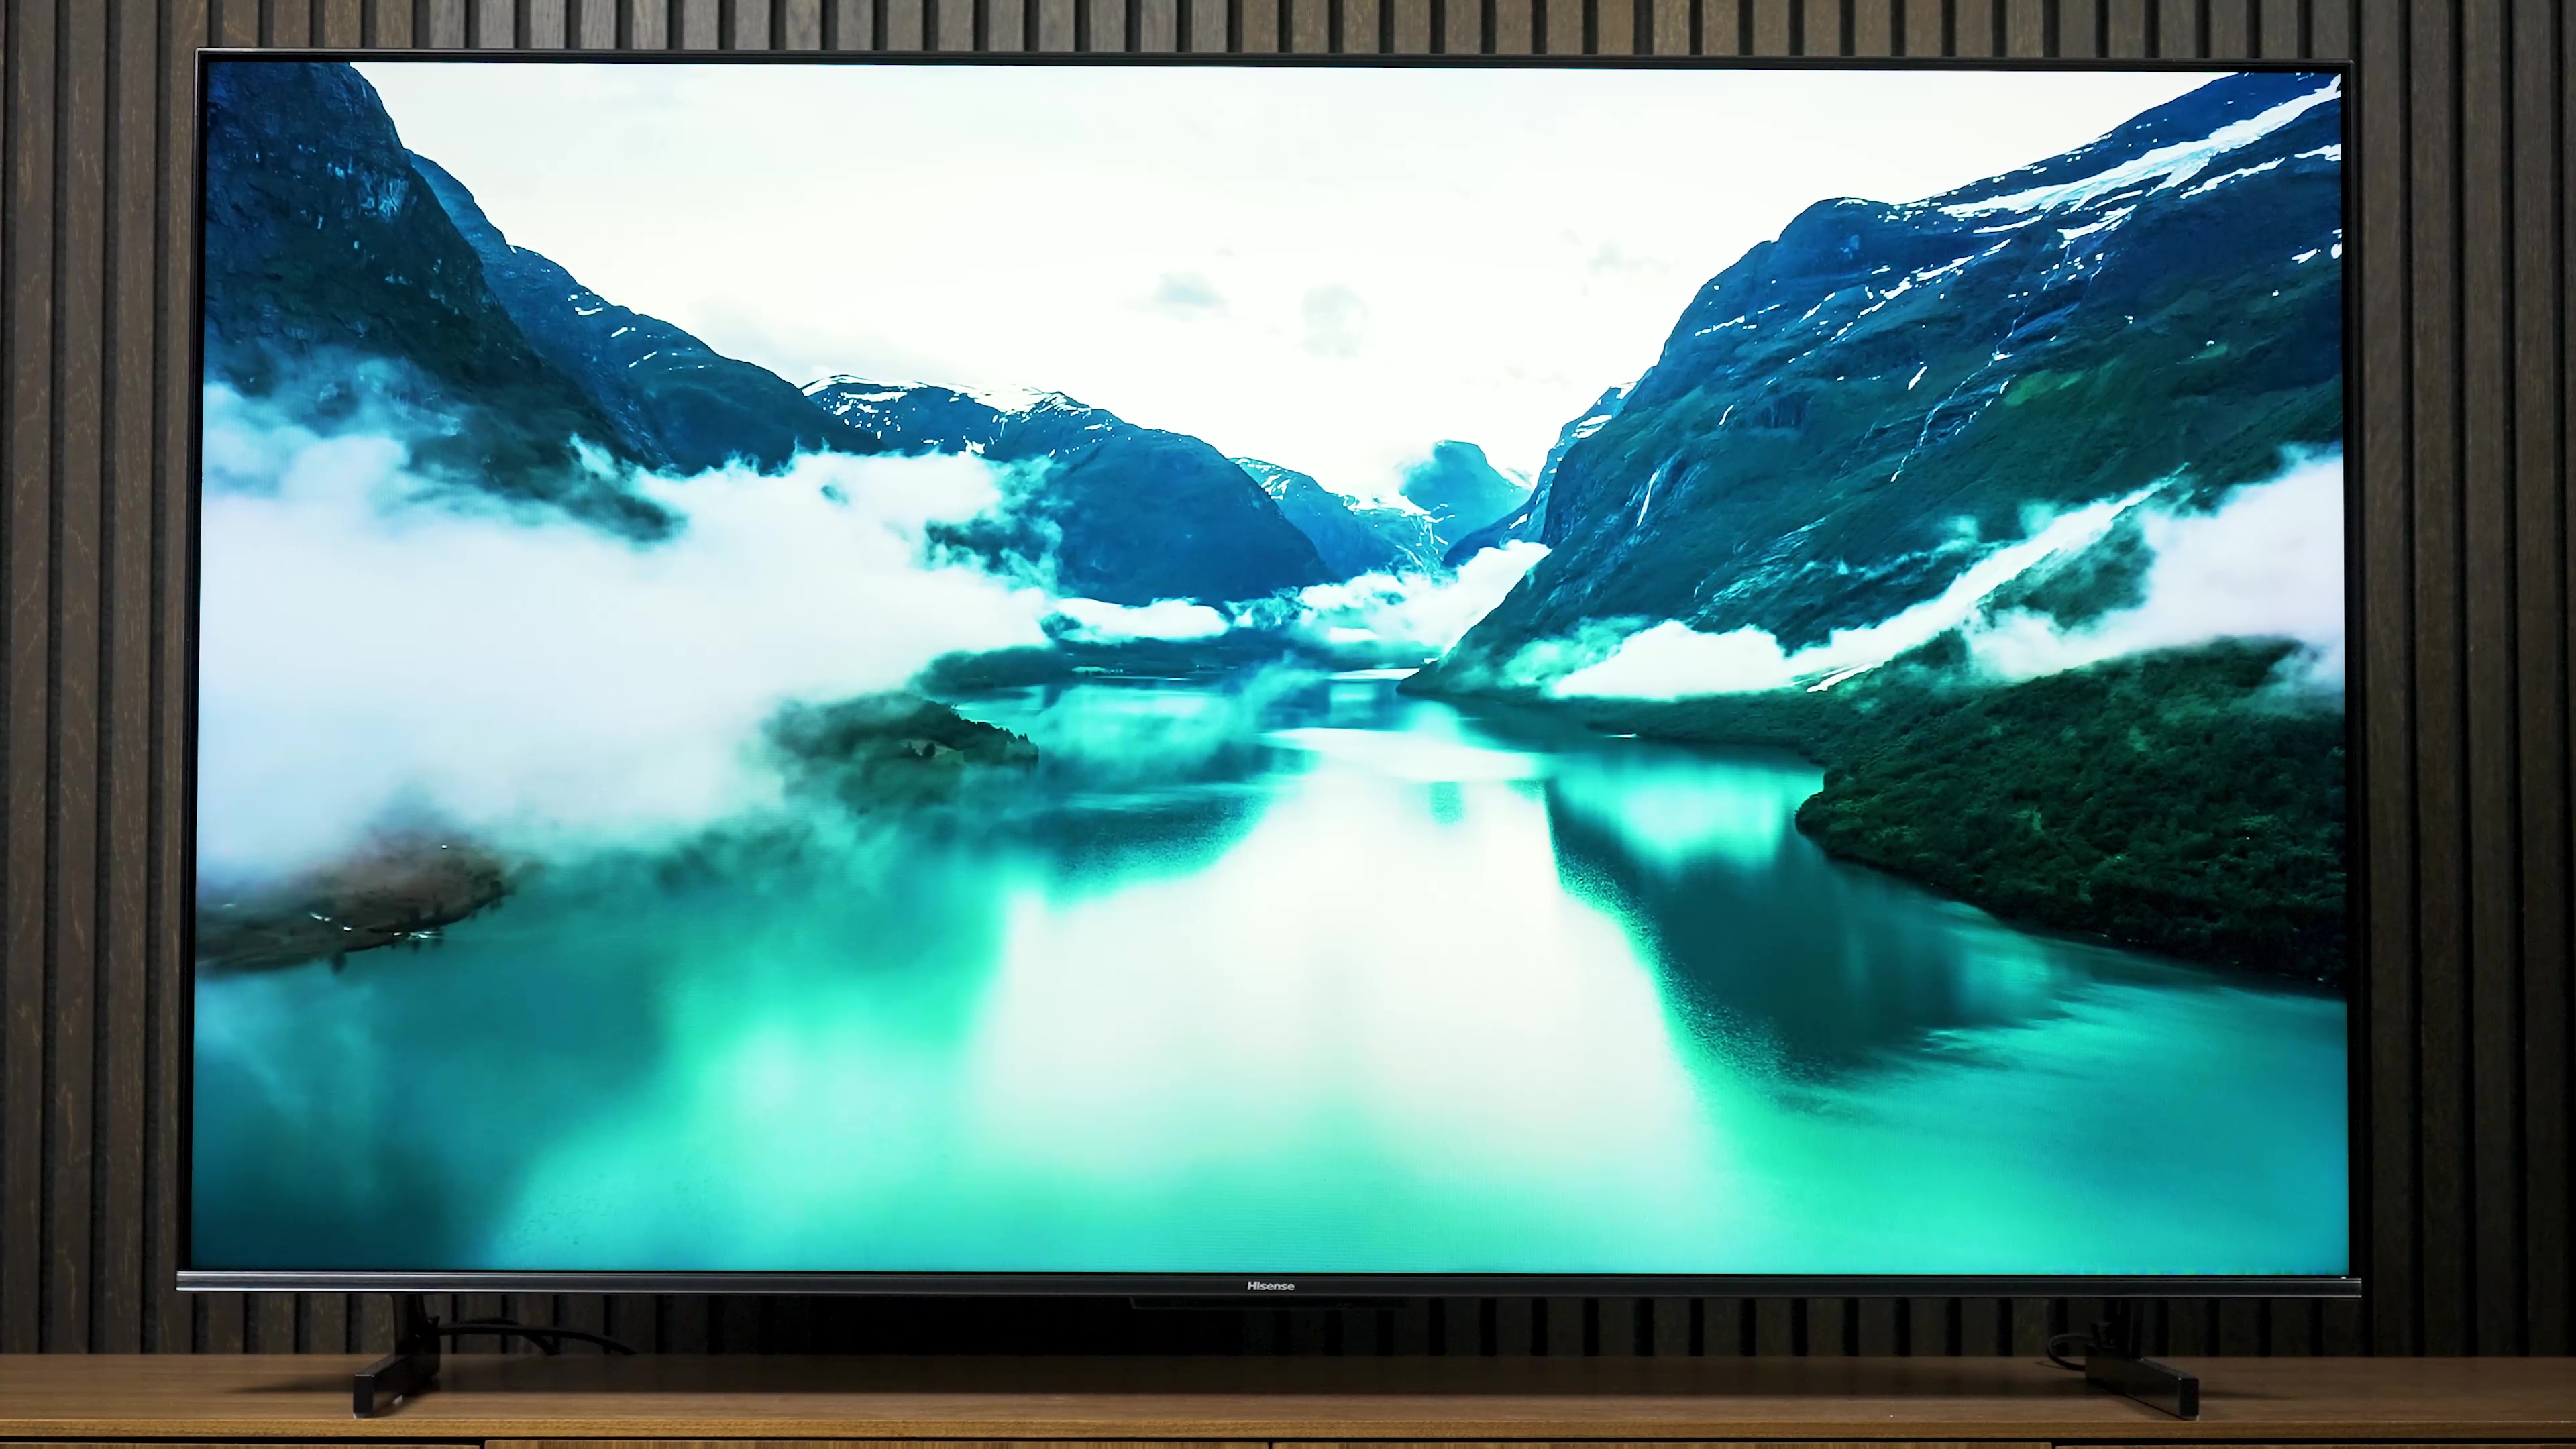 Hisense U7K ULED mini-LED TV review